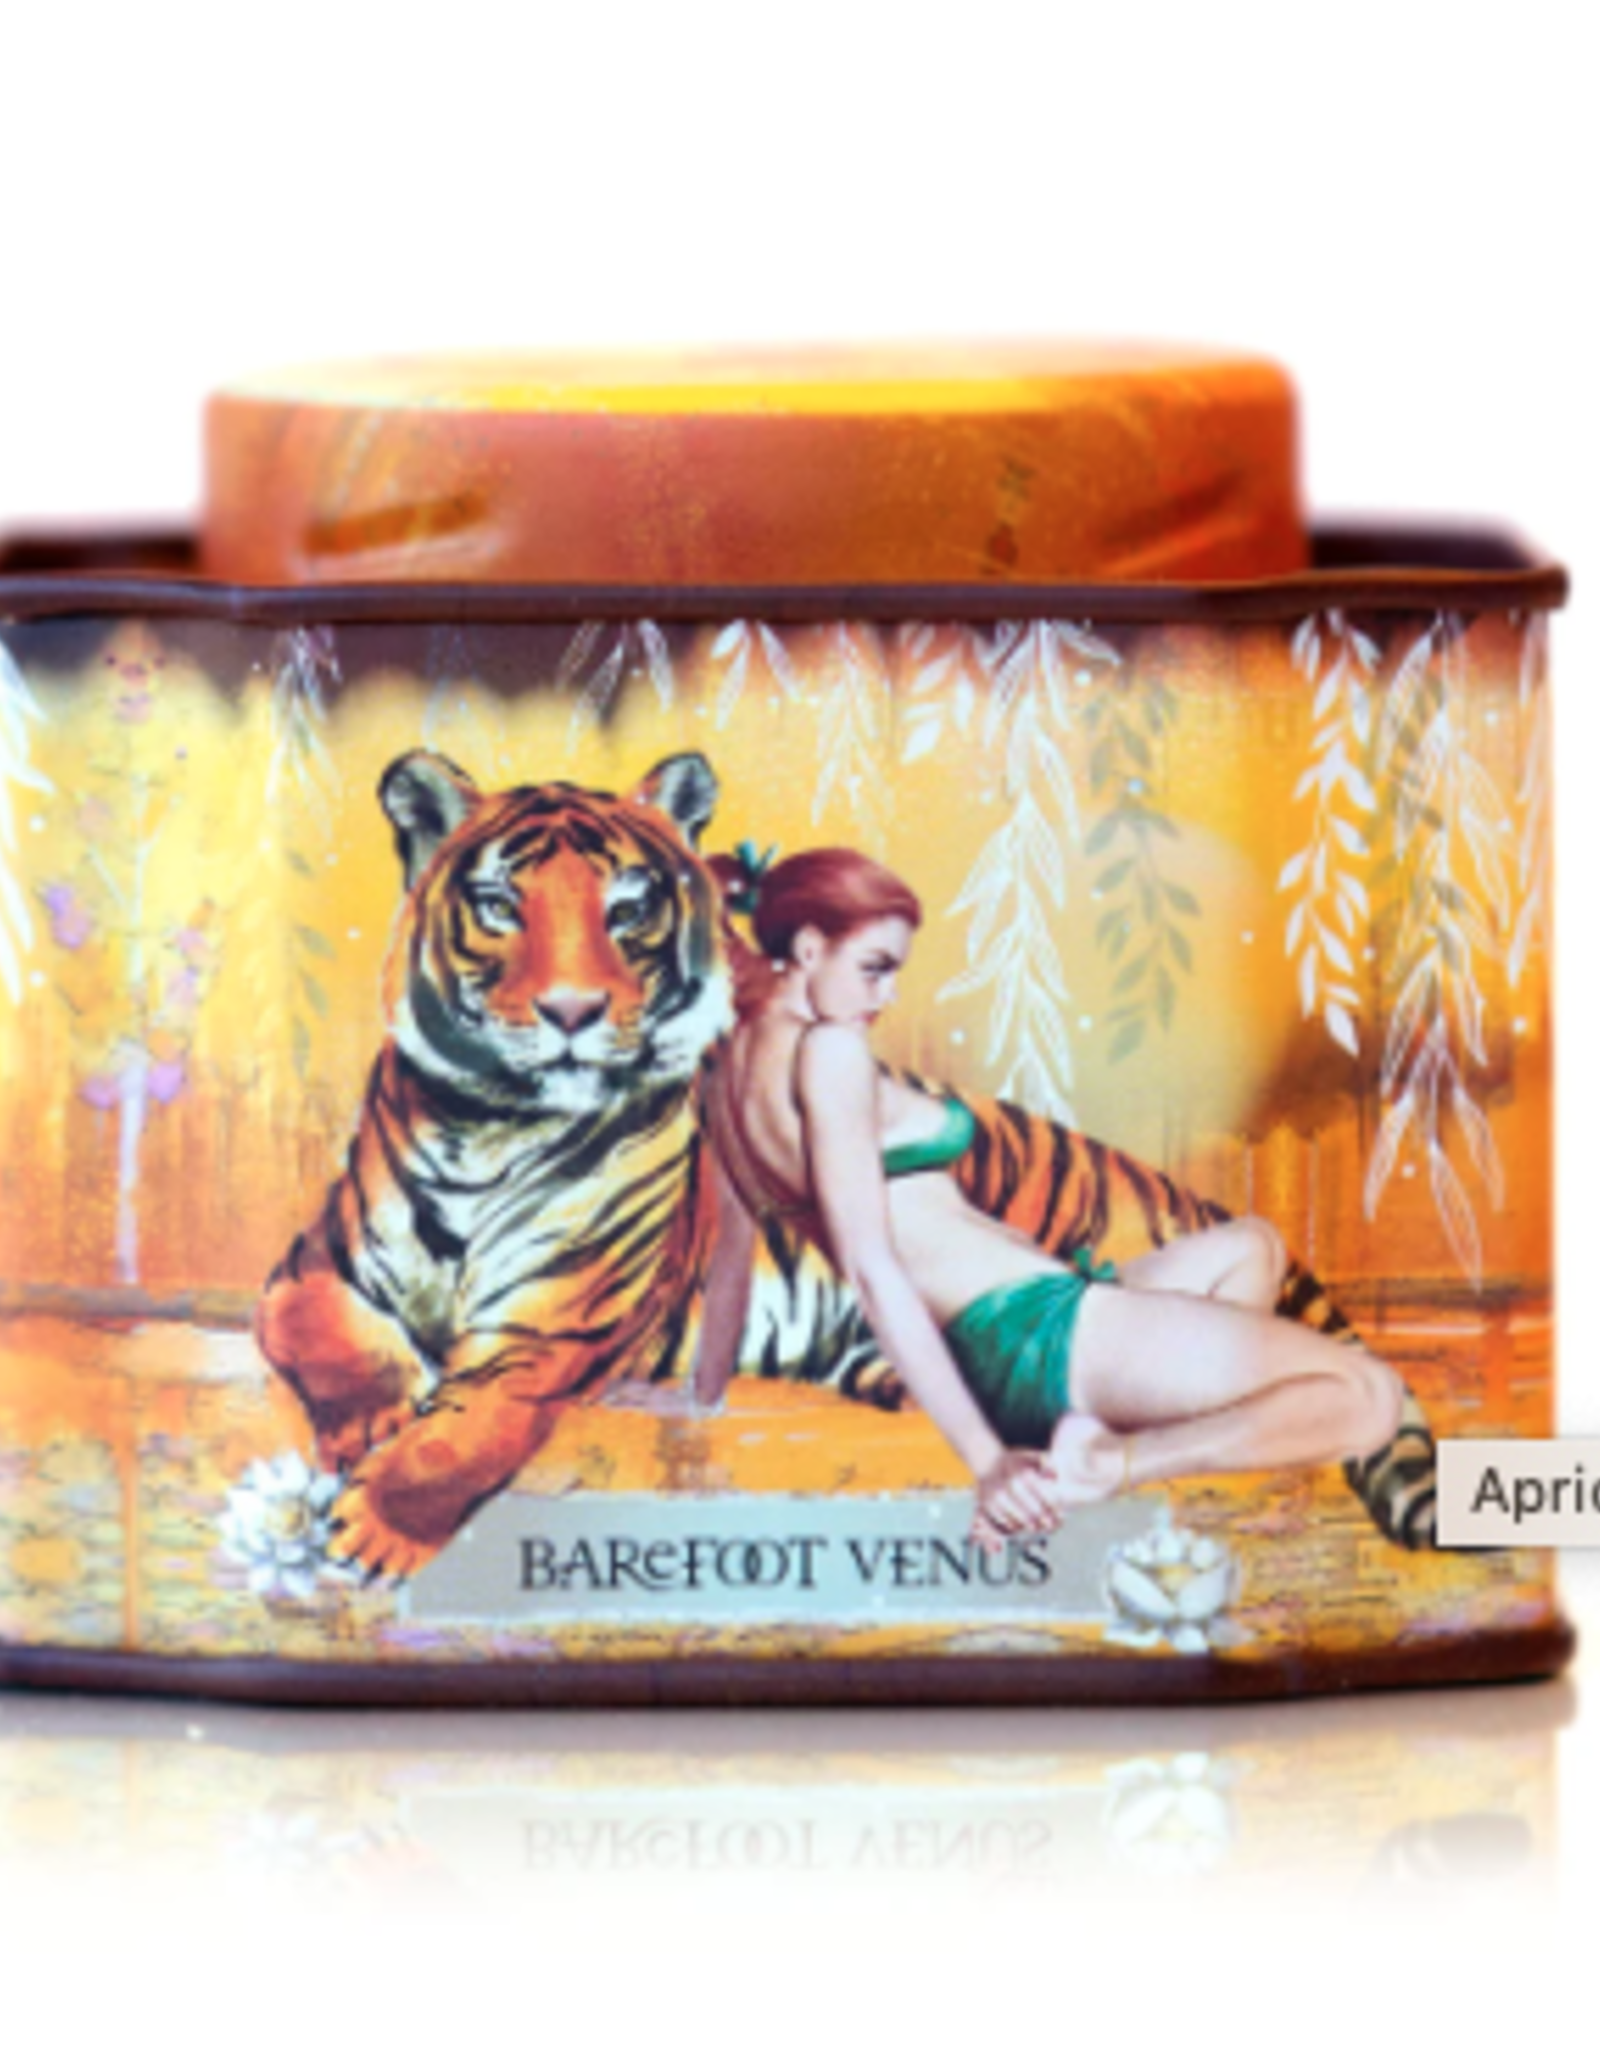 Barefoot Venus BV Apricot Brandy Bath Soak Tin